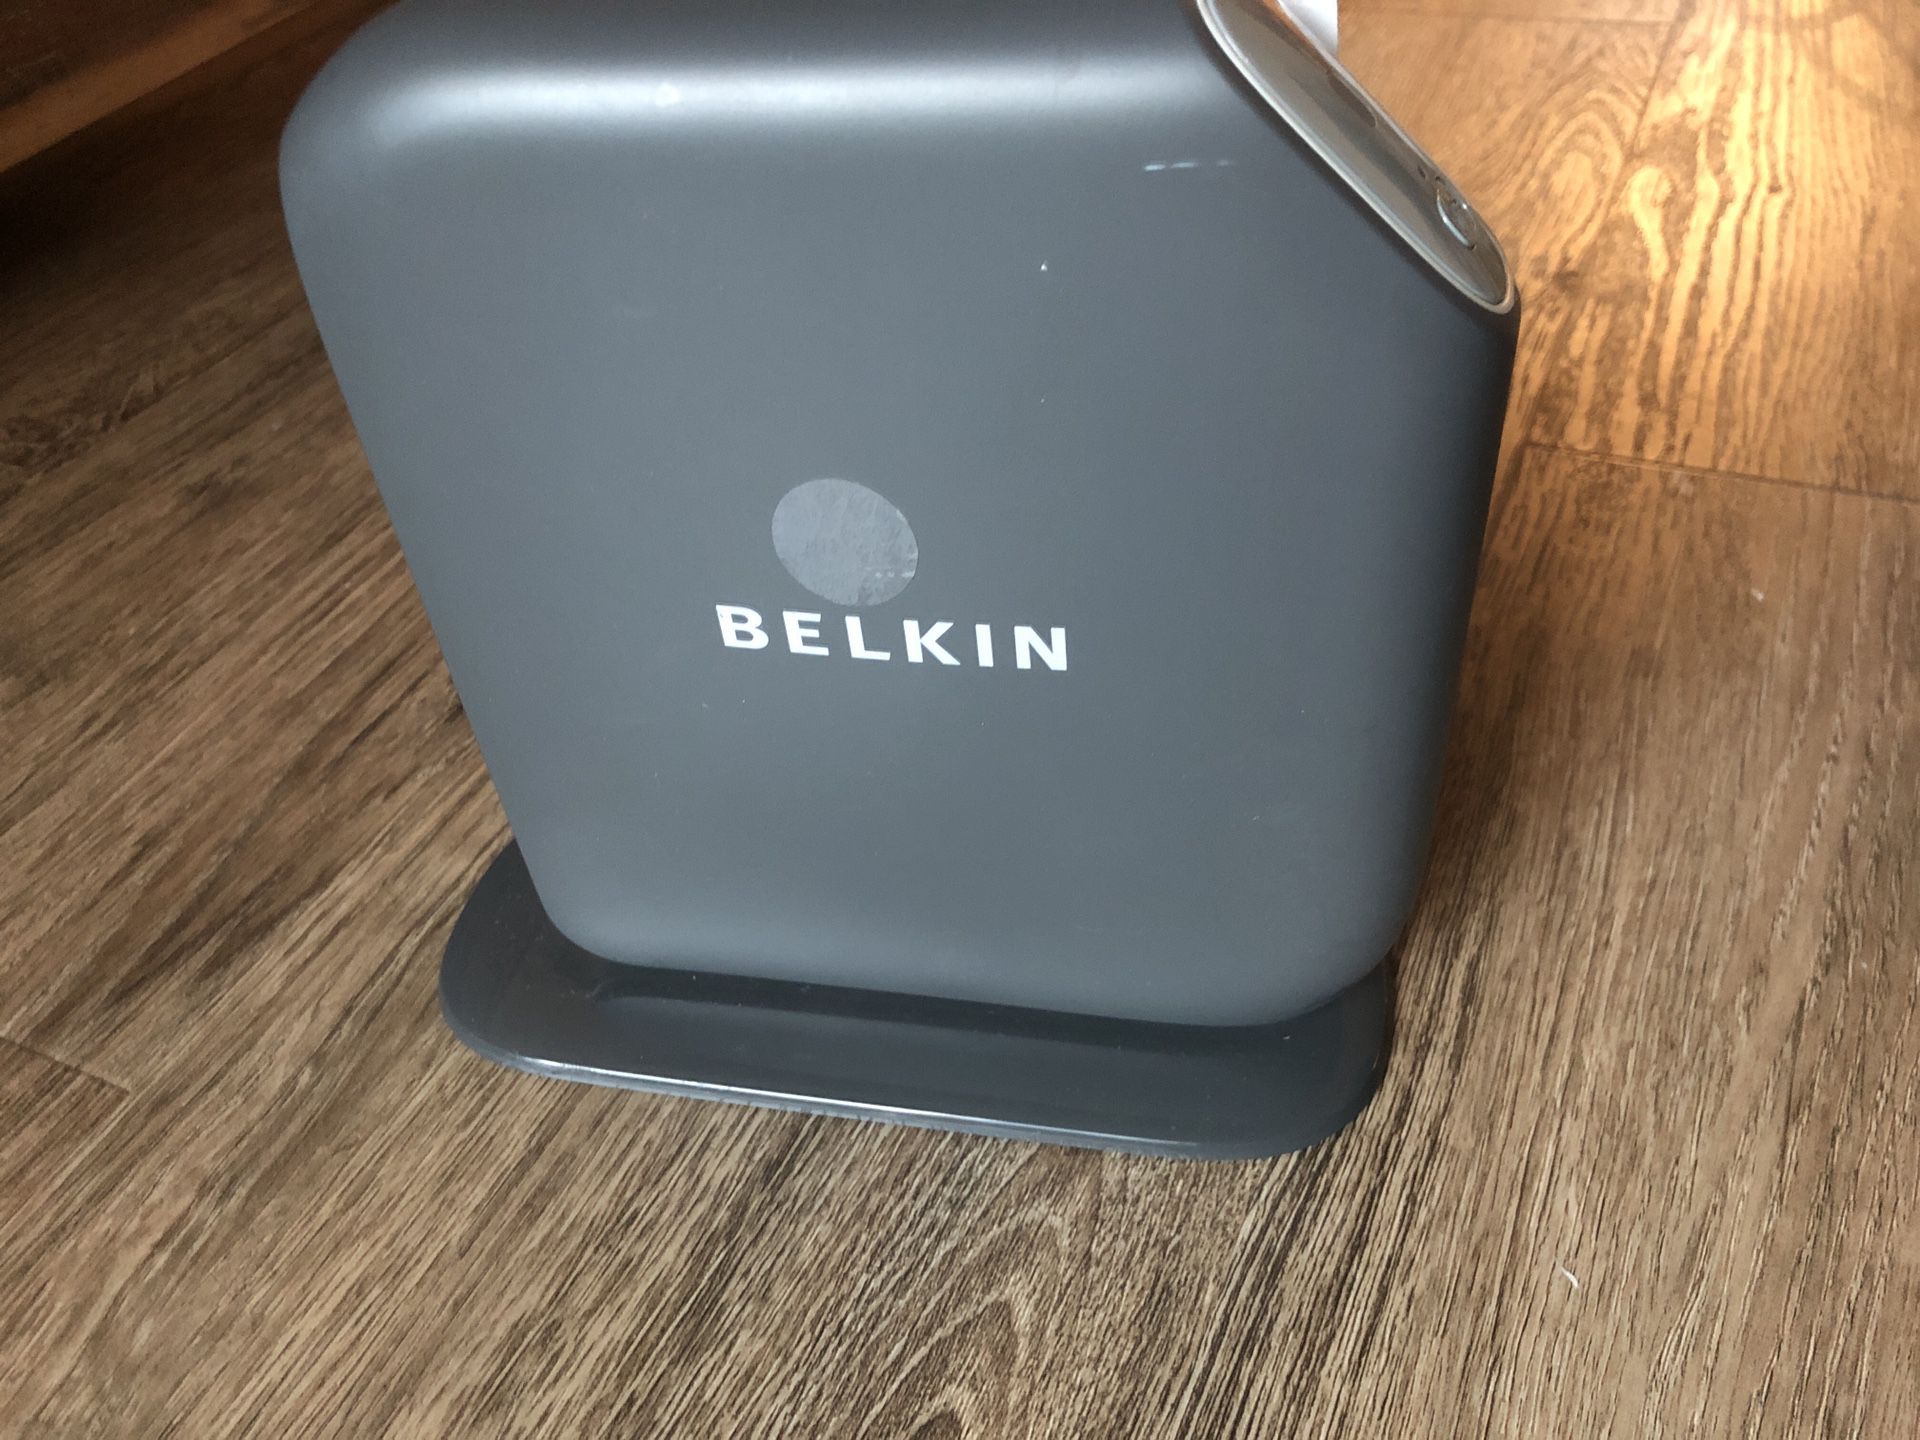 Belkin N300 modem